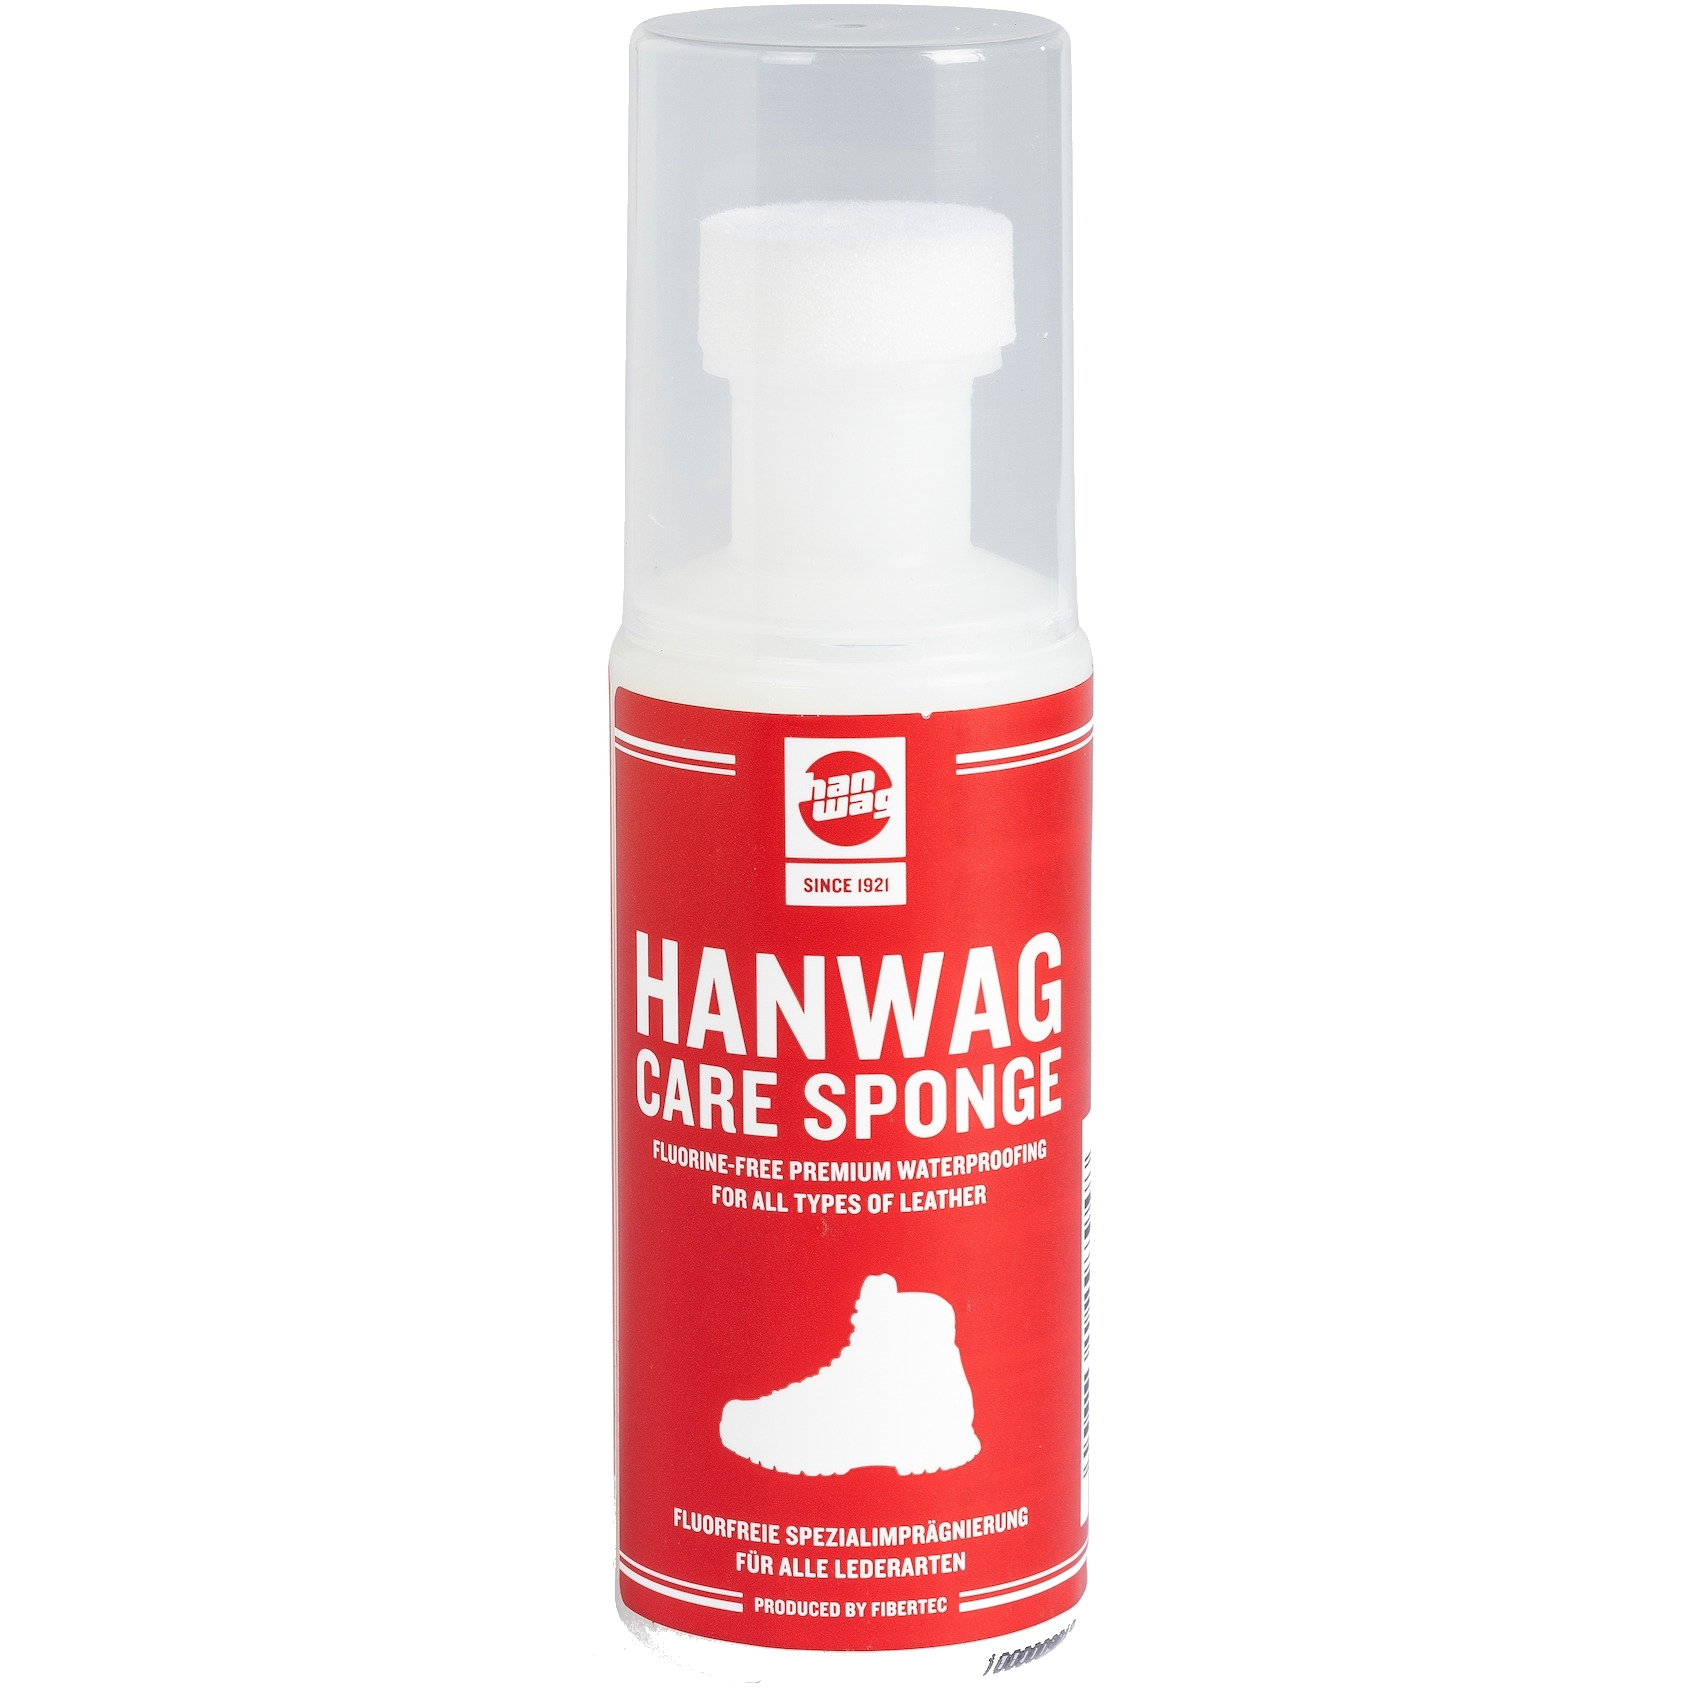 Productfoto van Hanwag Care Sponge Impregneerspray / Leerbalsem 100ml